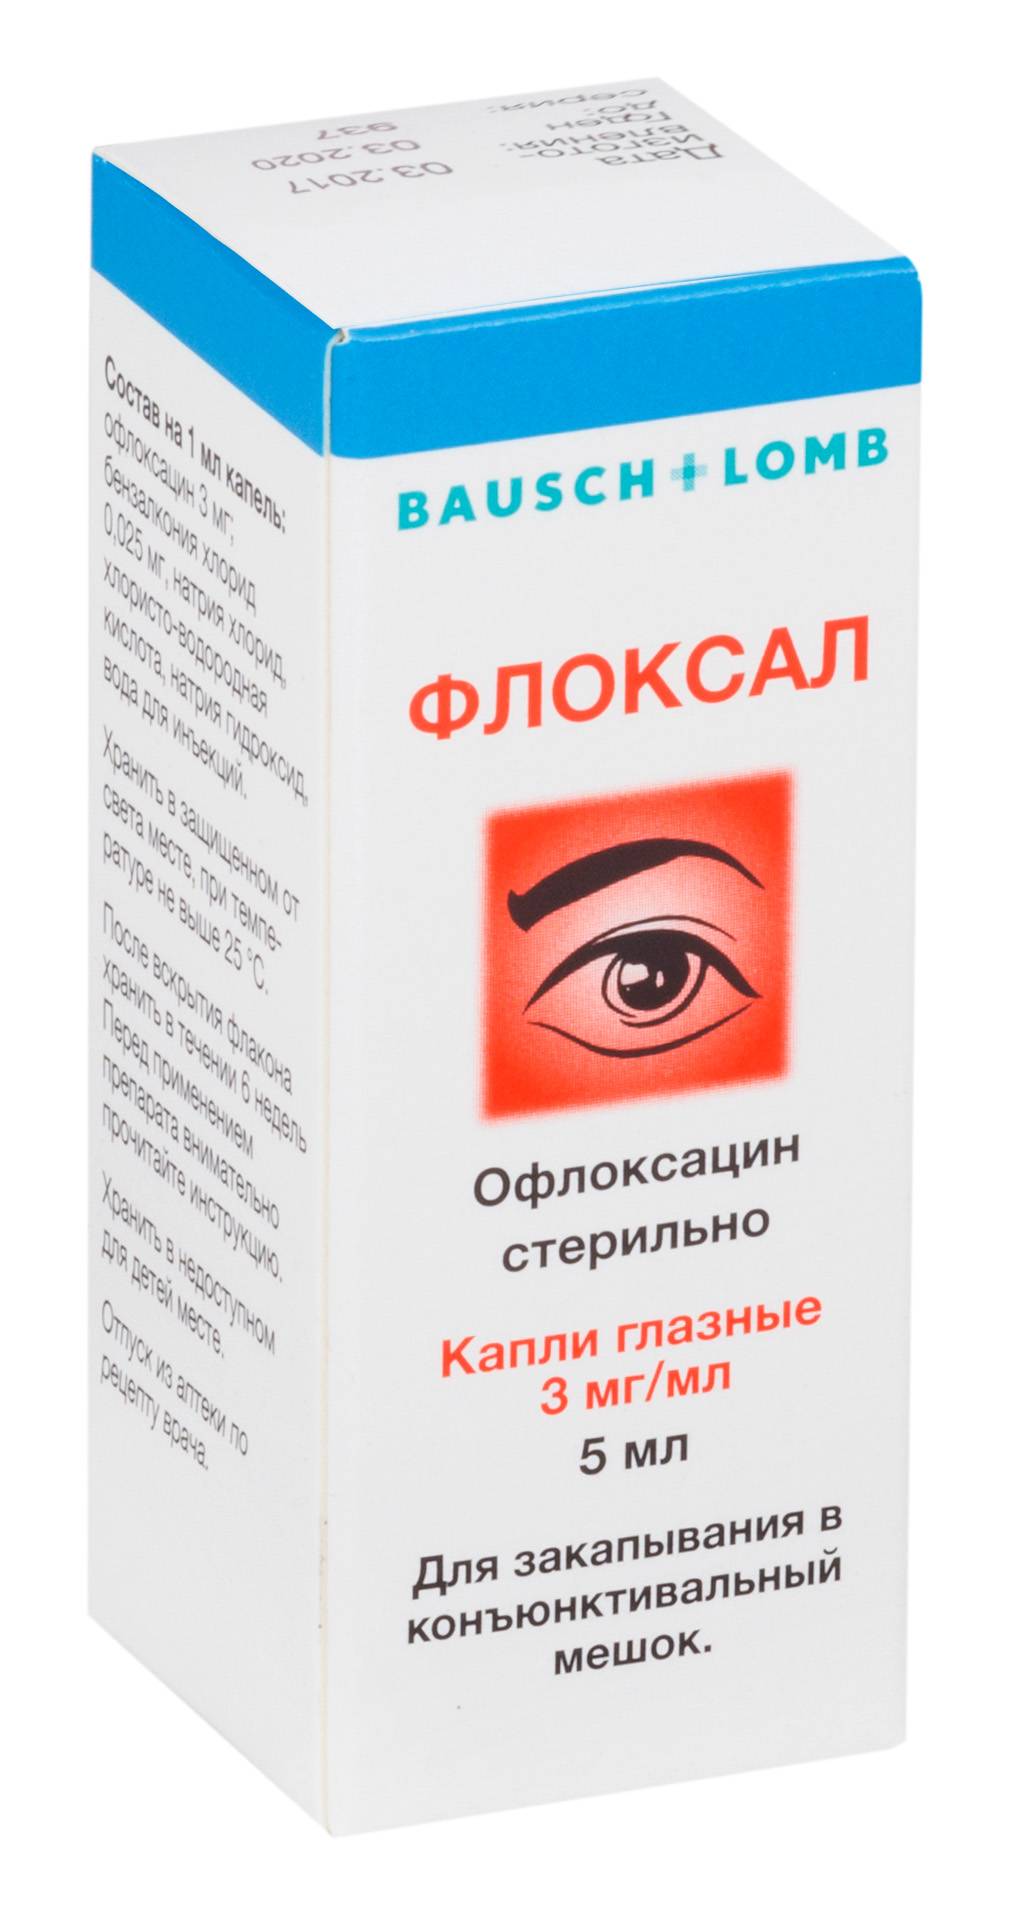 Левофлоксацин (глазные капли): инструкция по применению, цена, отзывы, аналоги, состав